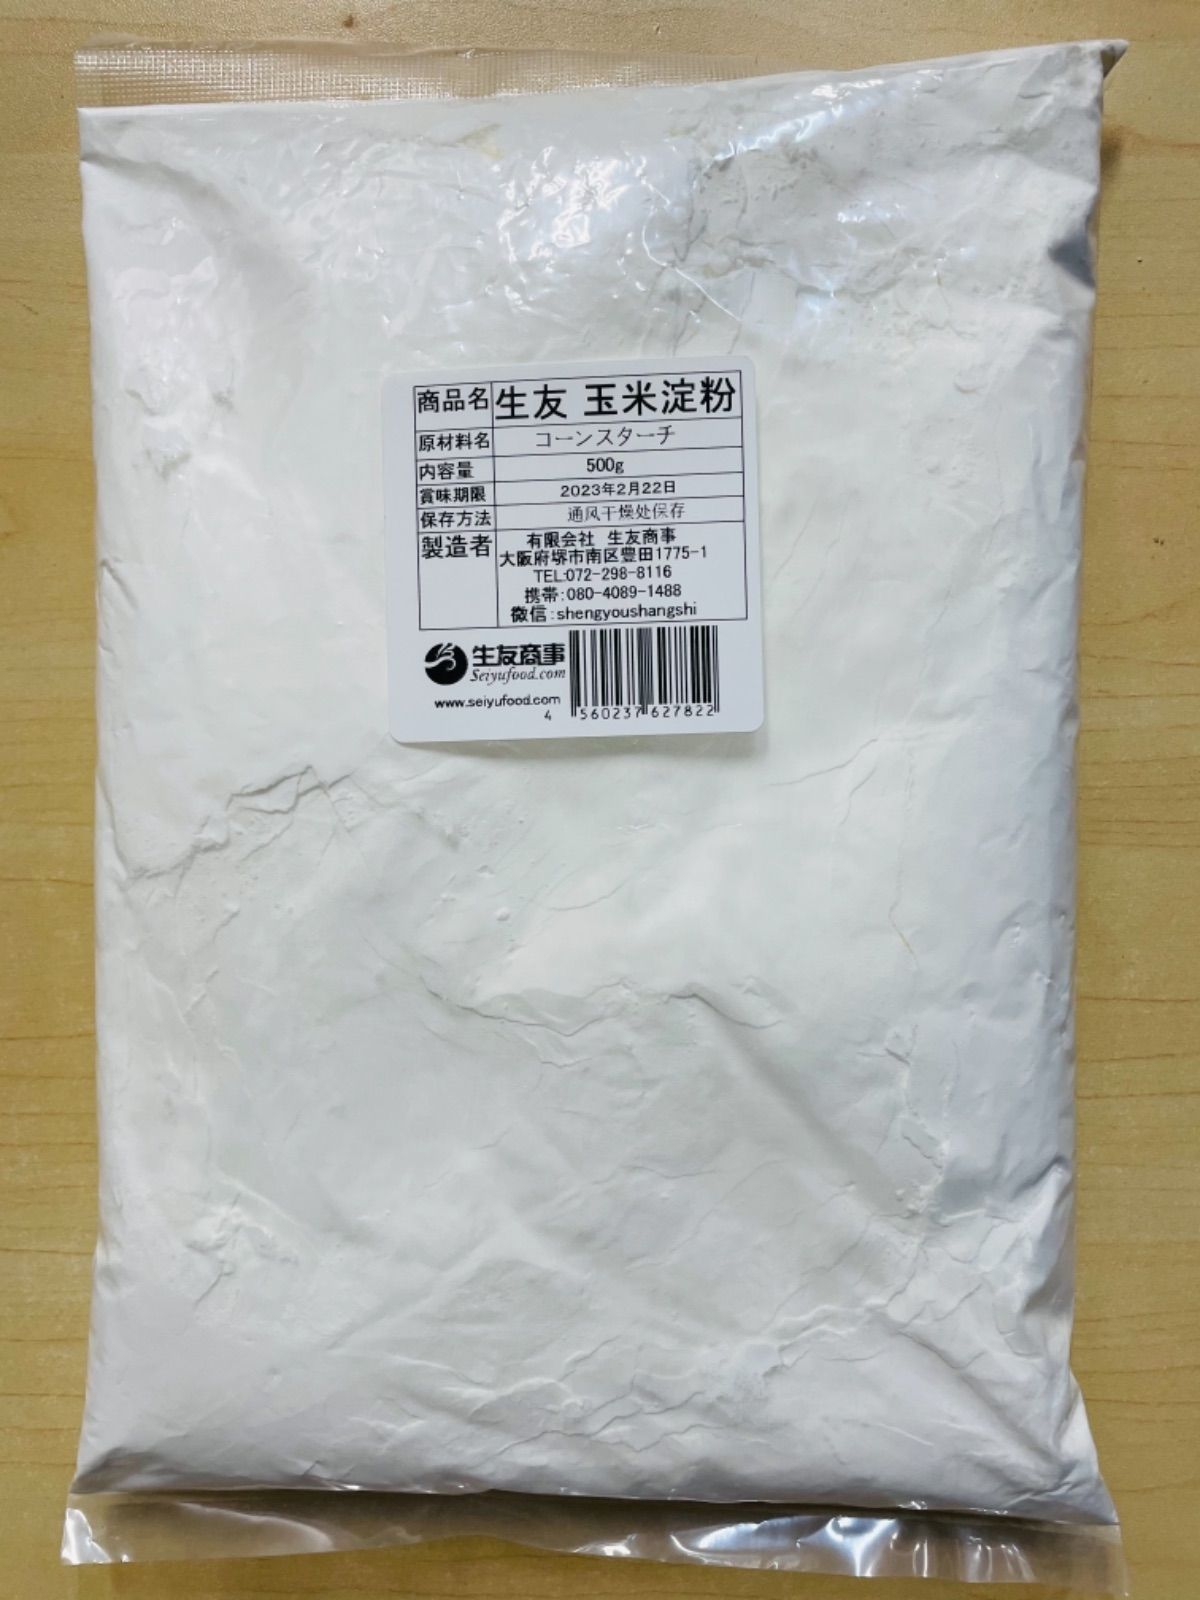 メルカリShops - 中国物産 玉米淀粉 とうもろこし澱粉 コーンスターチ 500g 1袋